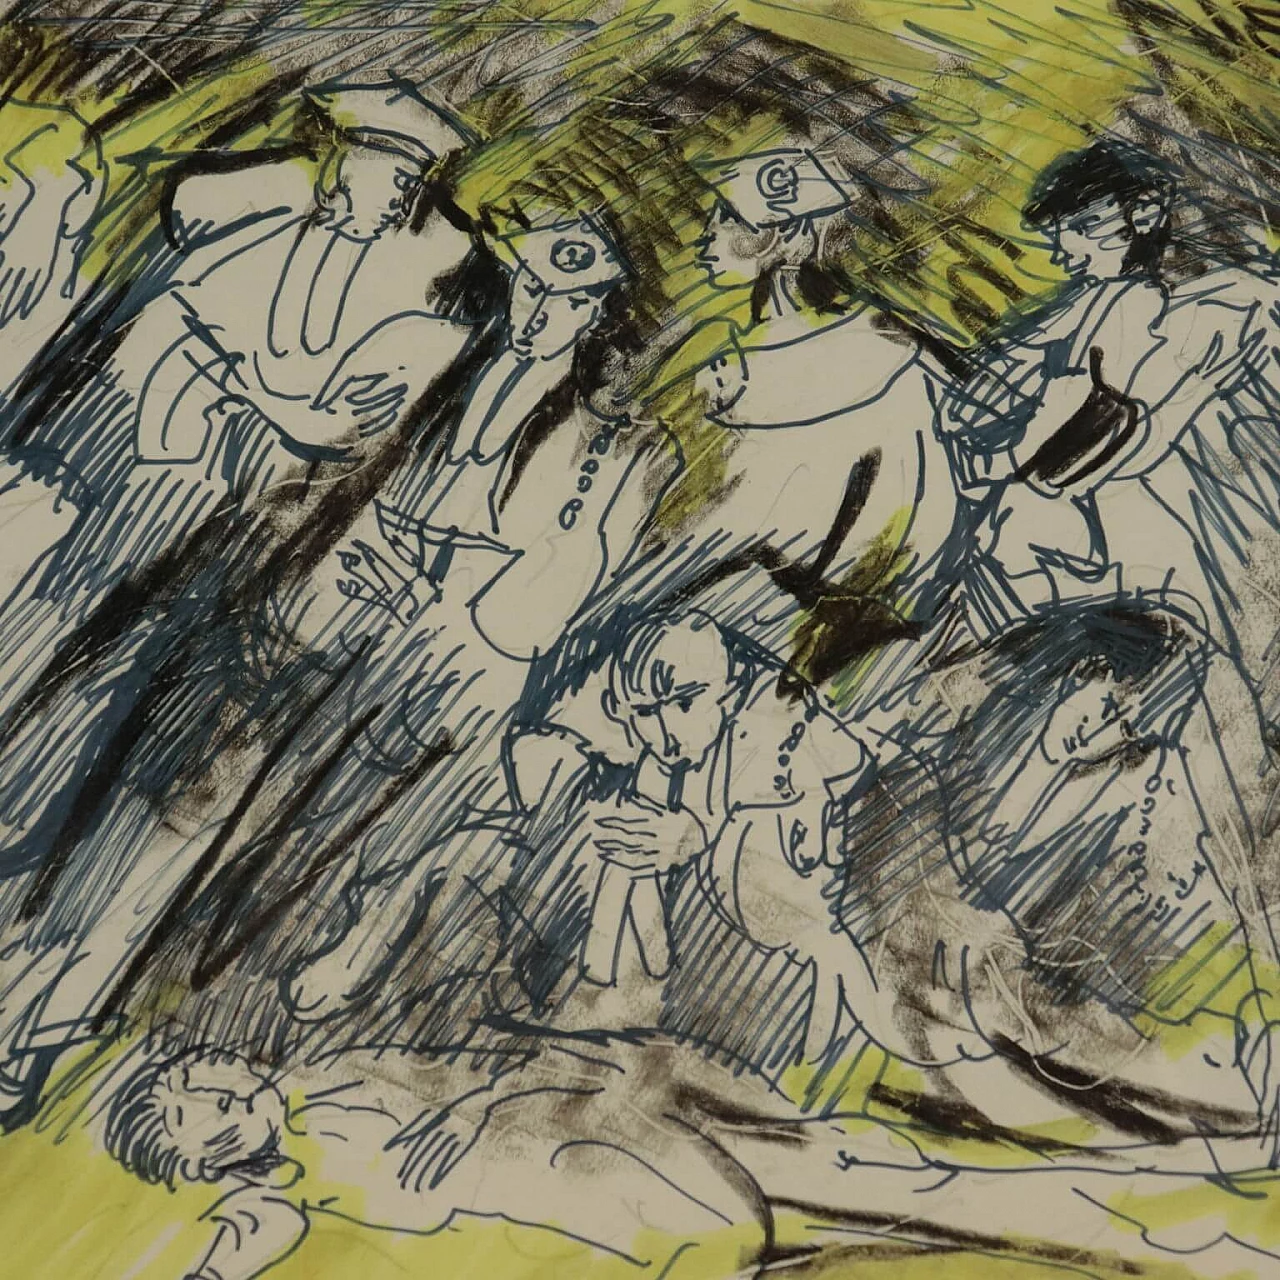 Remo Brindisi, Olocausto, disegno a tecnica mista su carta, 1989 5